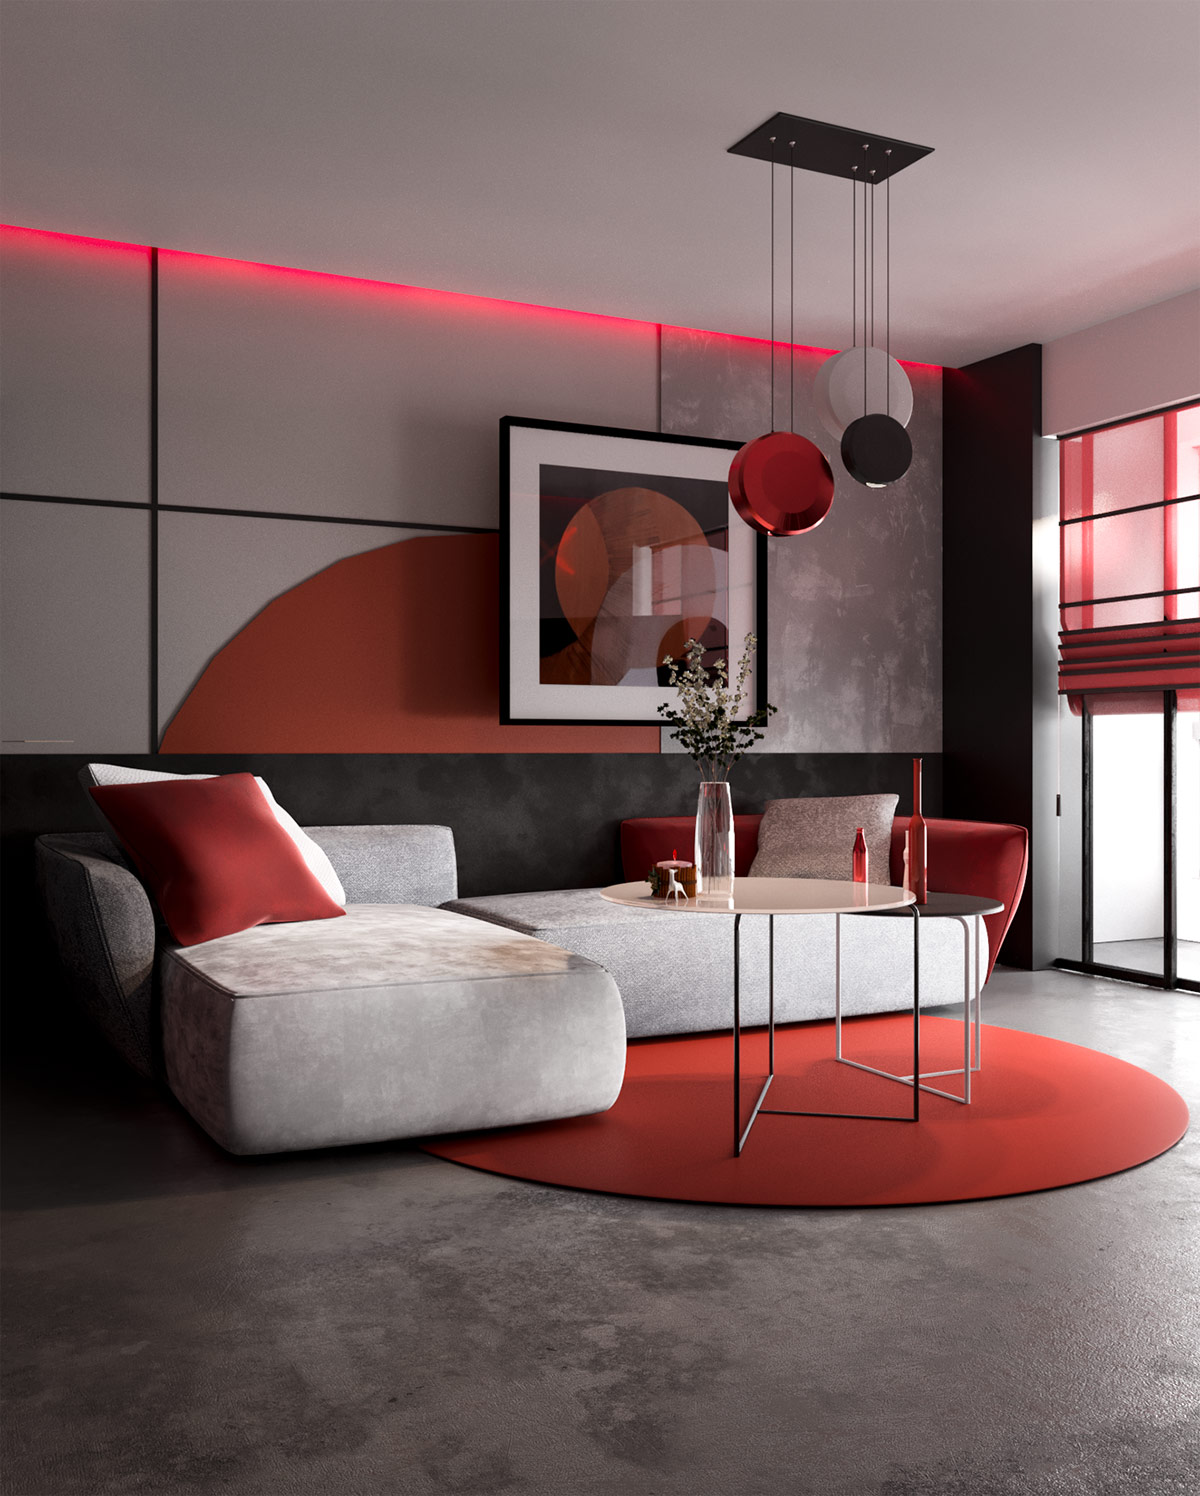 Căn hộ hiện đại với nội thất đỏ xám phong cách Nhật Bản